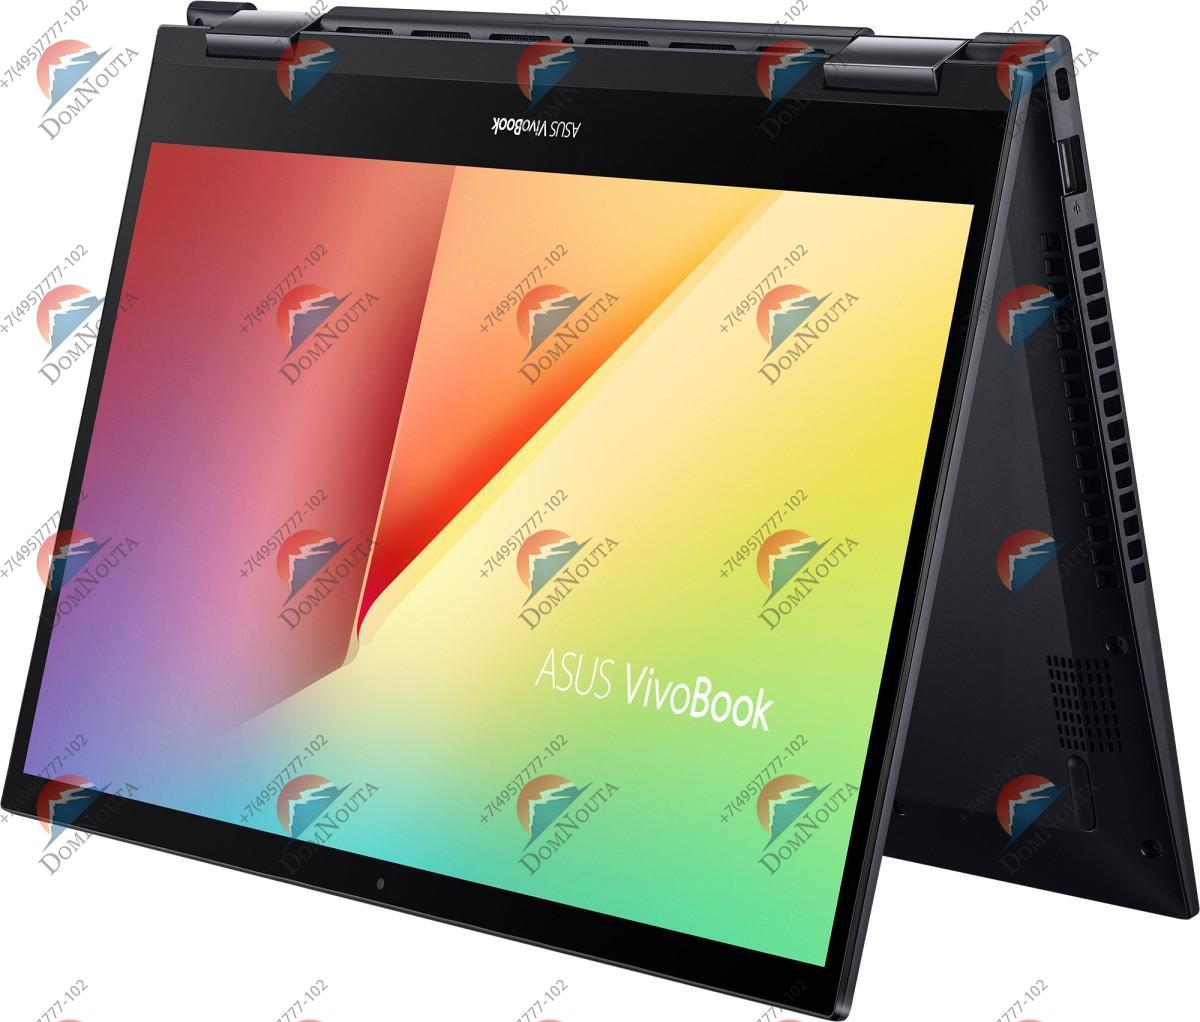 Ноутбук Asus Vivobook Flip TM420Ua